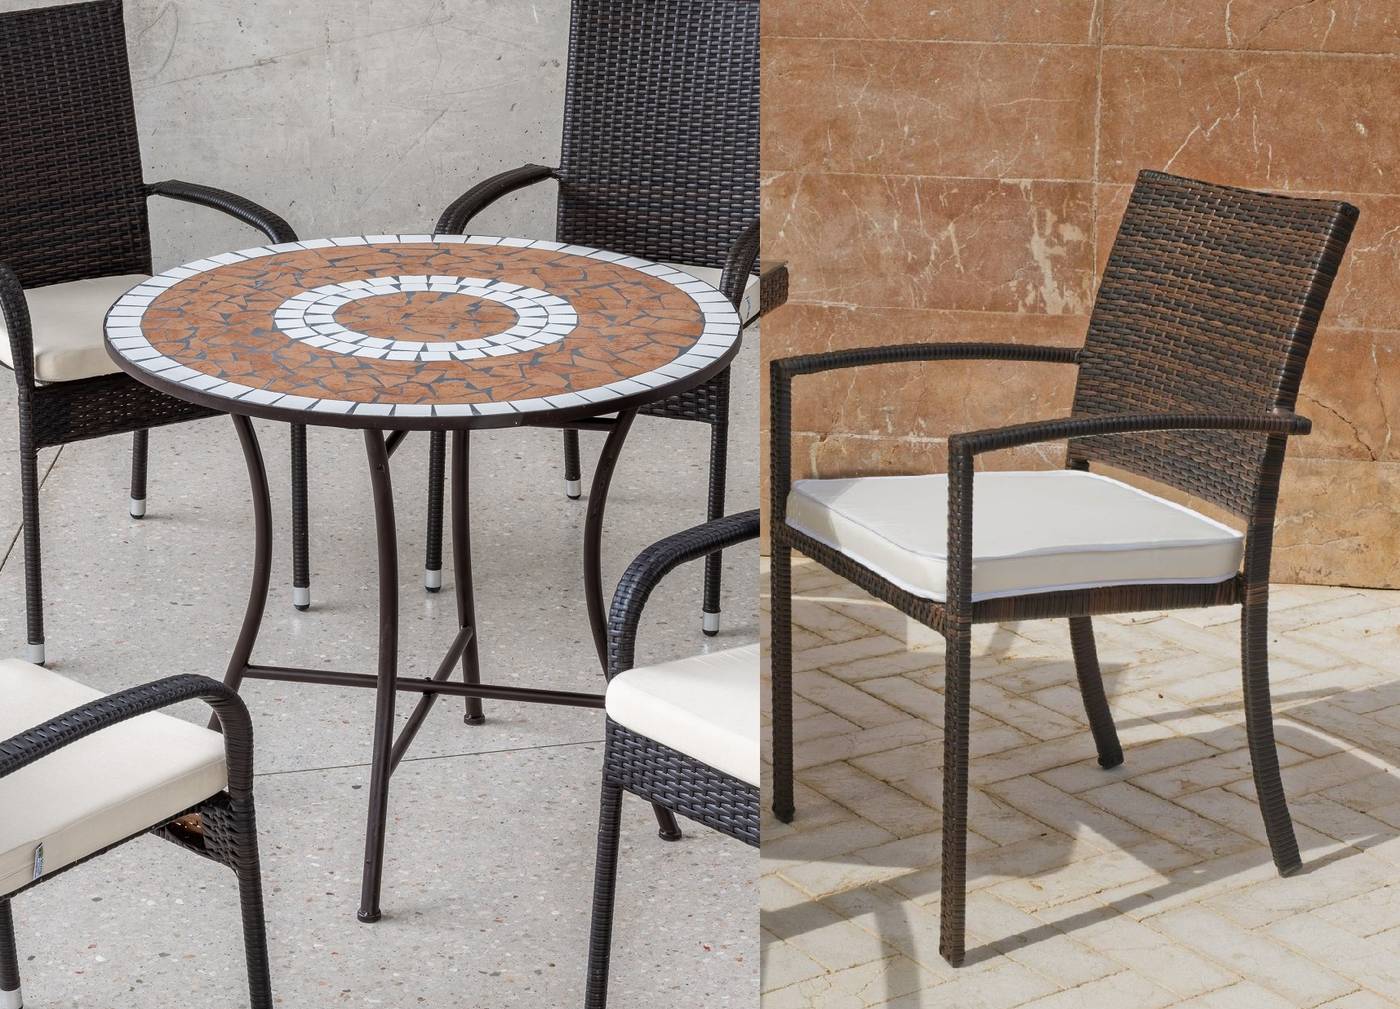 Conjunto de forja color marrón: mesa circular con tablero mosaico de 90 cm + 4 sillones de ratán sintético.